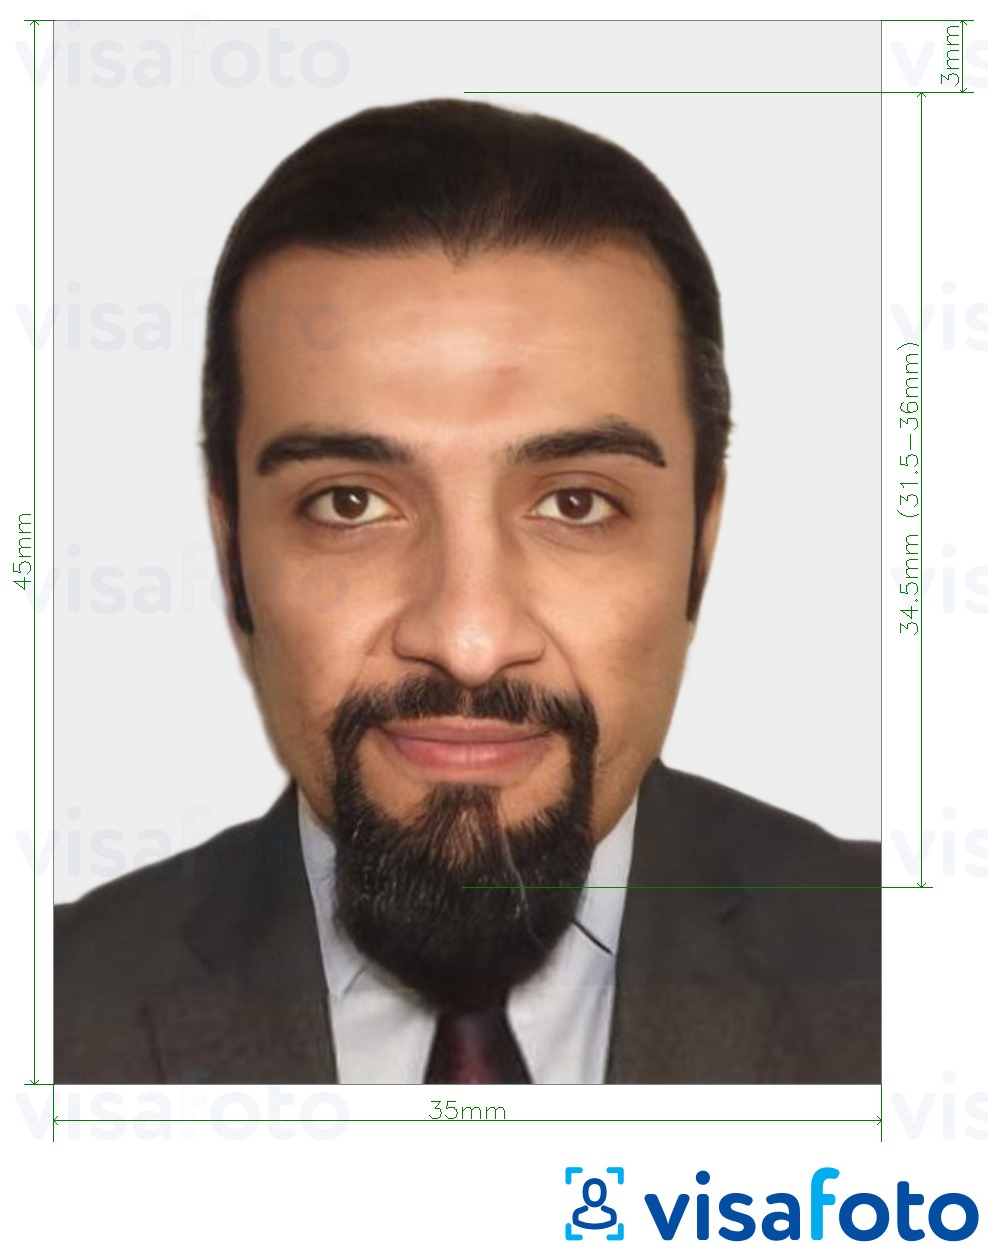 Ejemplo de foto para Visa Mauritania 35x45 mm (3,5x4,5 cm) con la especificación del tamaño exacto